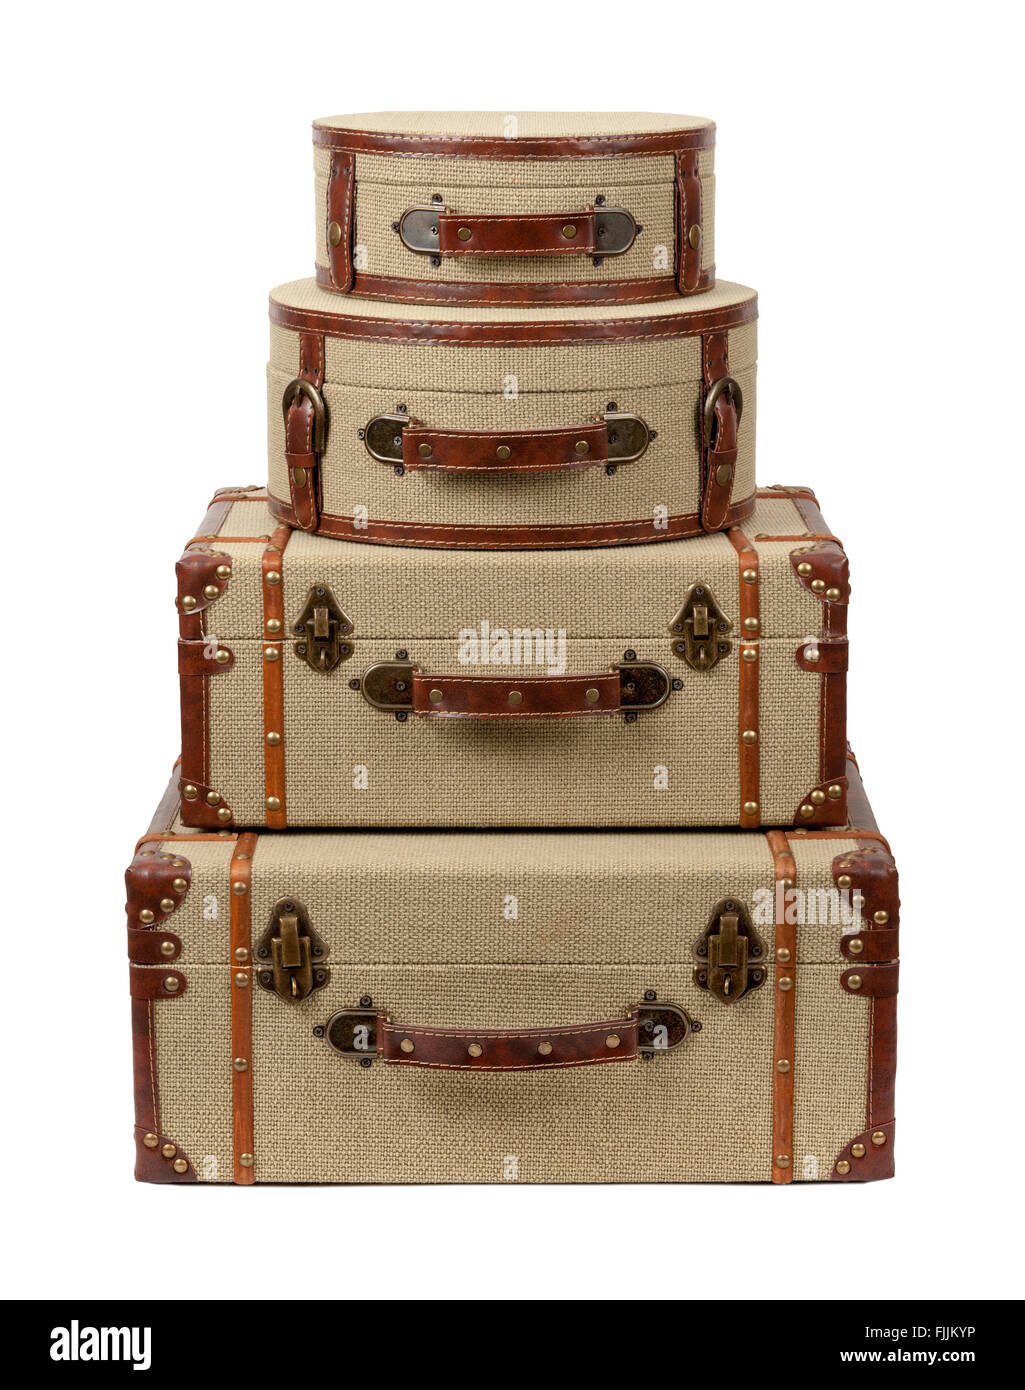 Vier übereinander Deco Sackleinen Koffer. Das Bild zeigt einen Ausschnitt  isoliert auf einem weißen Hintergrund Stockfotografie - Alamy